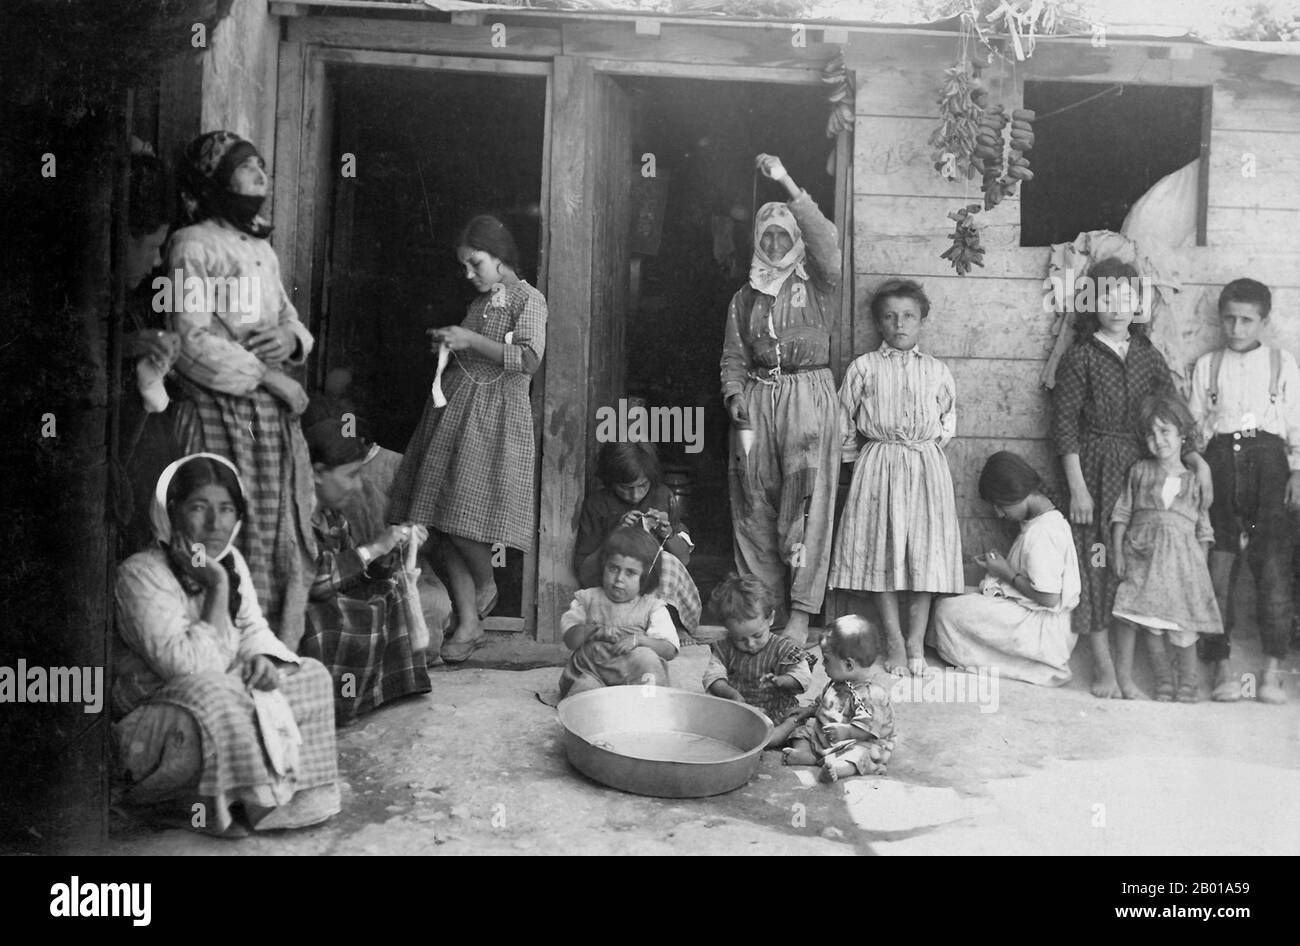 Syrien: Armenische Flüchtlinge aus dem türkischen Völkermord in einem Lager in Aleppo. Foto von Vartan Derounian (1888-1954) (nicht urheberrechtlich geschützt), c. 1922. Ein armenisch-amerikanisches Flüchtlingslager in Aleppo, Syrien, c. 1922. Das Originalbild war eine Postkarte, mit der Geld für das Lager eingewerben wurde. Unterstützt von Missionaren, machten diese Flüchtlinge, hauptsächlich Frauen und Kinder aus der Umgebung von Kharpert, Historisches Armenien, Handarbeiten zum Verkauf, deren Erlös ihnen half, die Überfahrt in die Vereinigten Staaten zu unterstützen und zu erwerben. Stockfoto